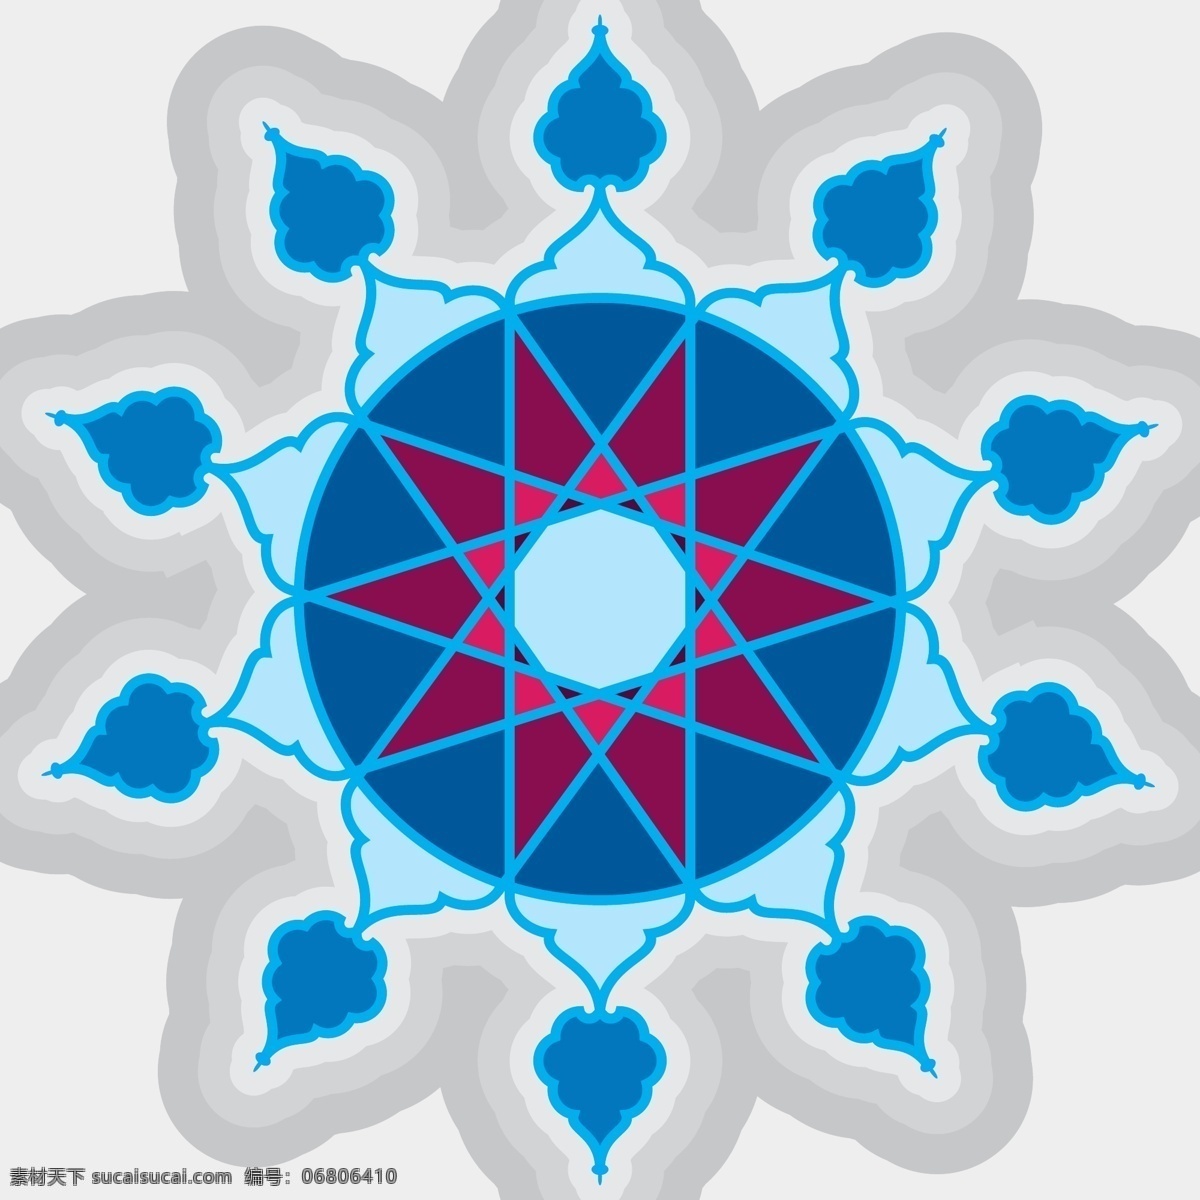 蓝色 伊斯兰 装饰 摘要花卉 几何 曼陀罗 阿拉伯语 锦缎 东方 花饰 主题 元素 传统 华丽 装饰元素 土耳其 白色